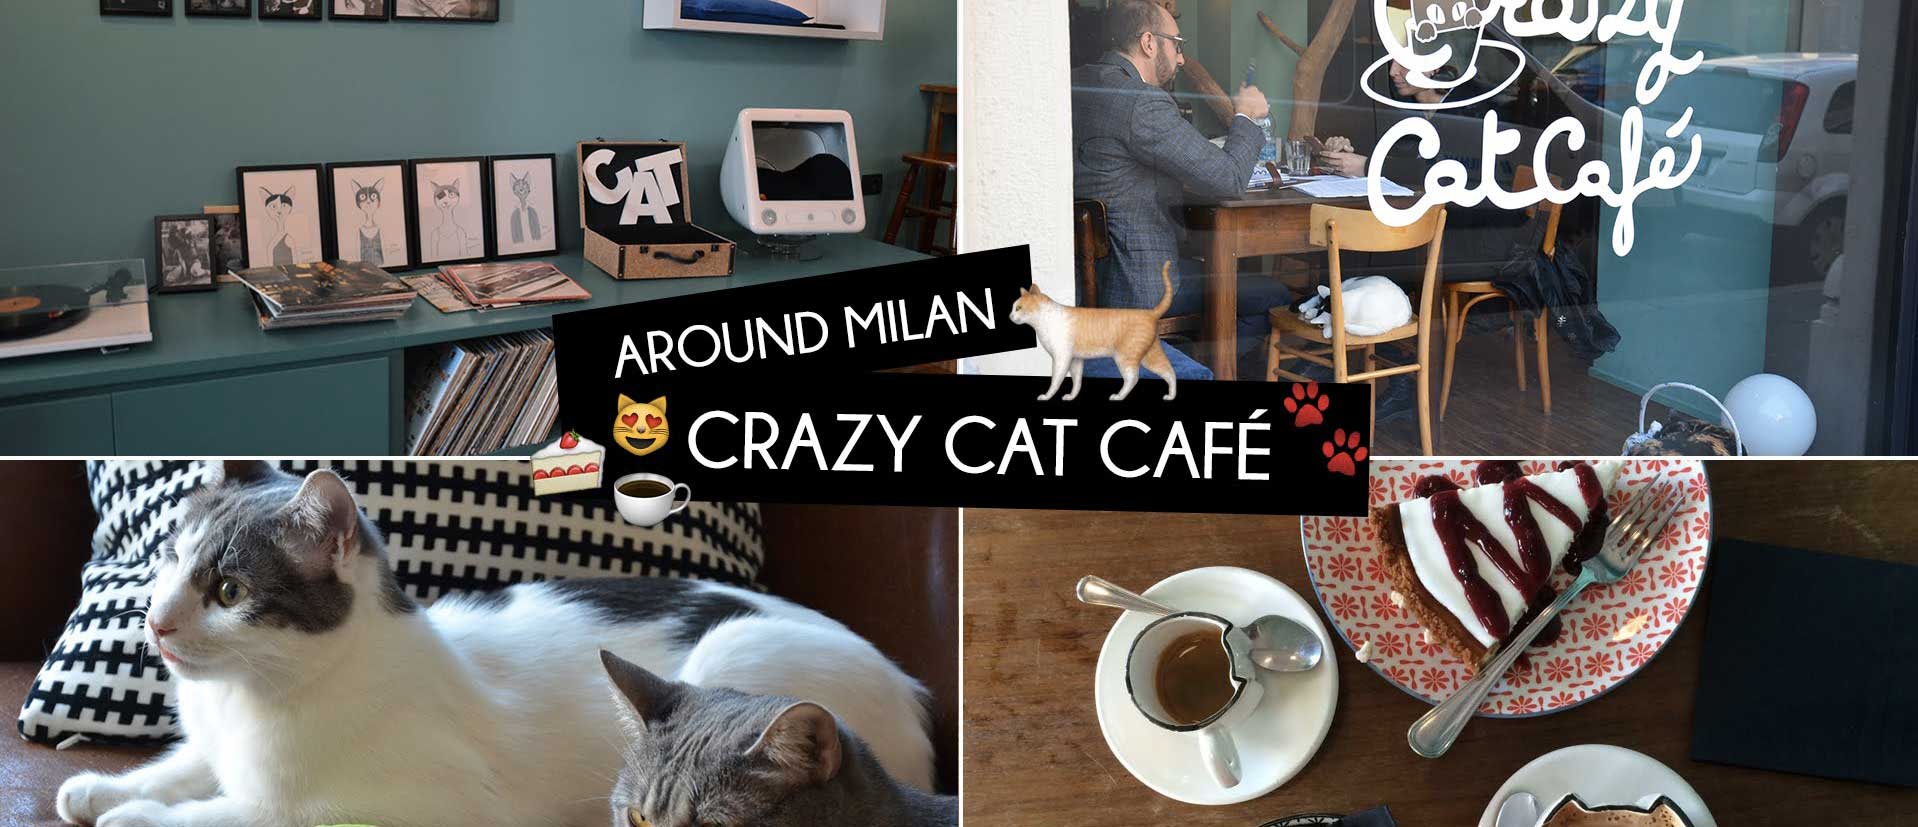 Esperienze insolite: visita il Crazy Cat Cafè vicino al nostro art hotel di Milano!